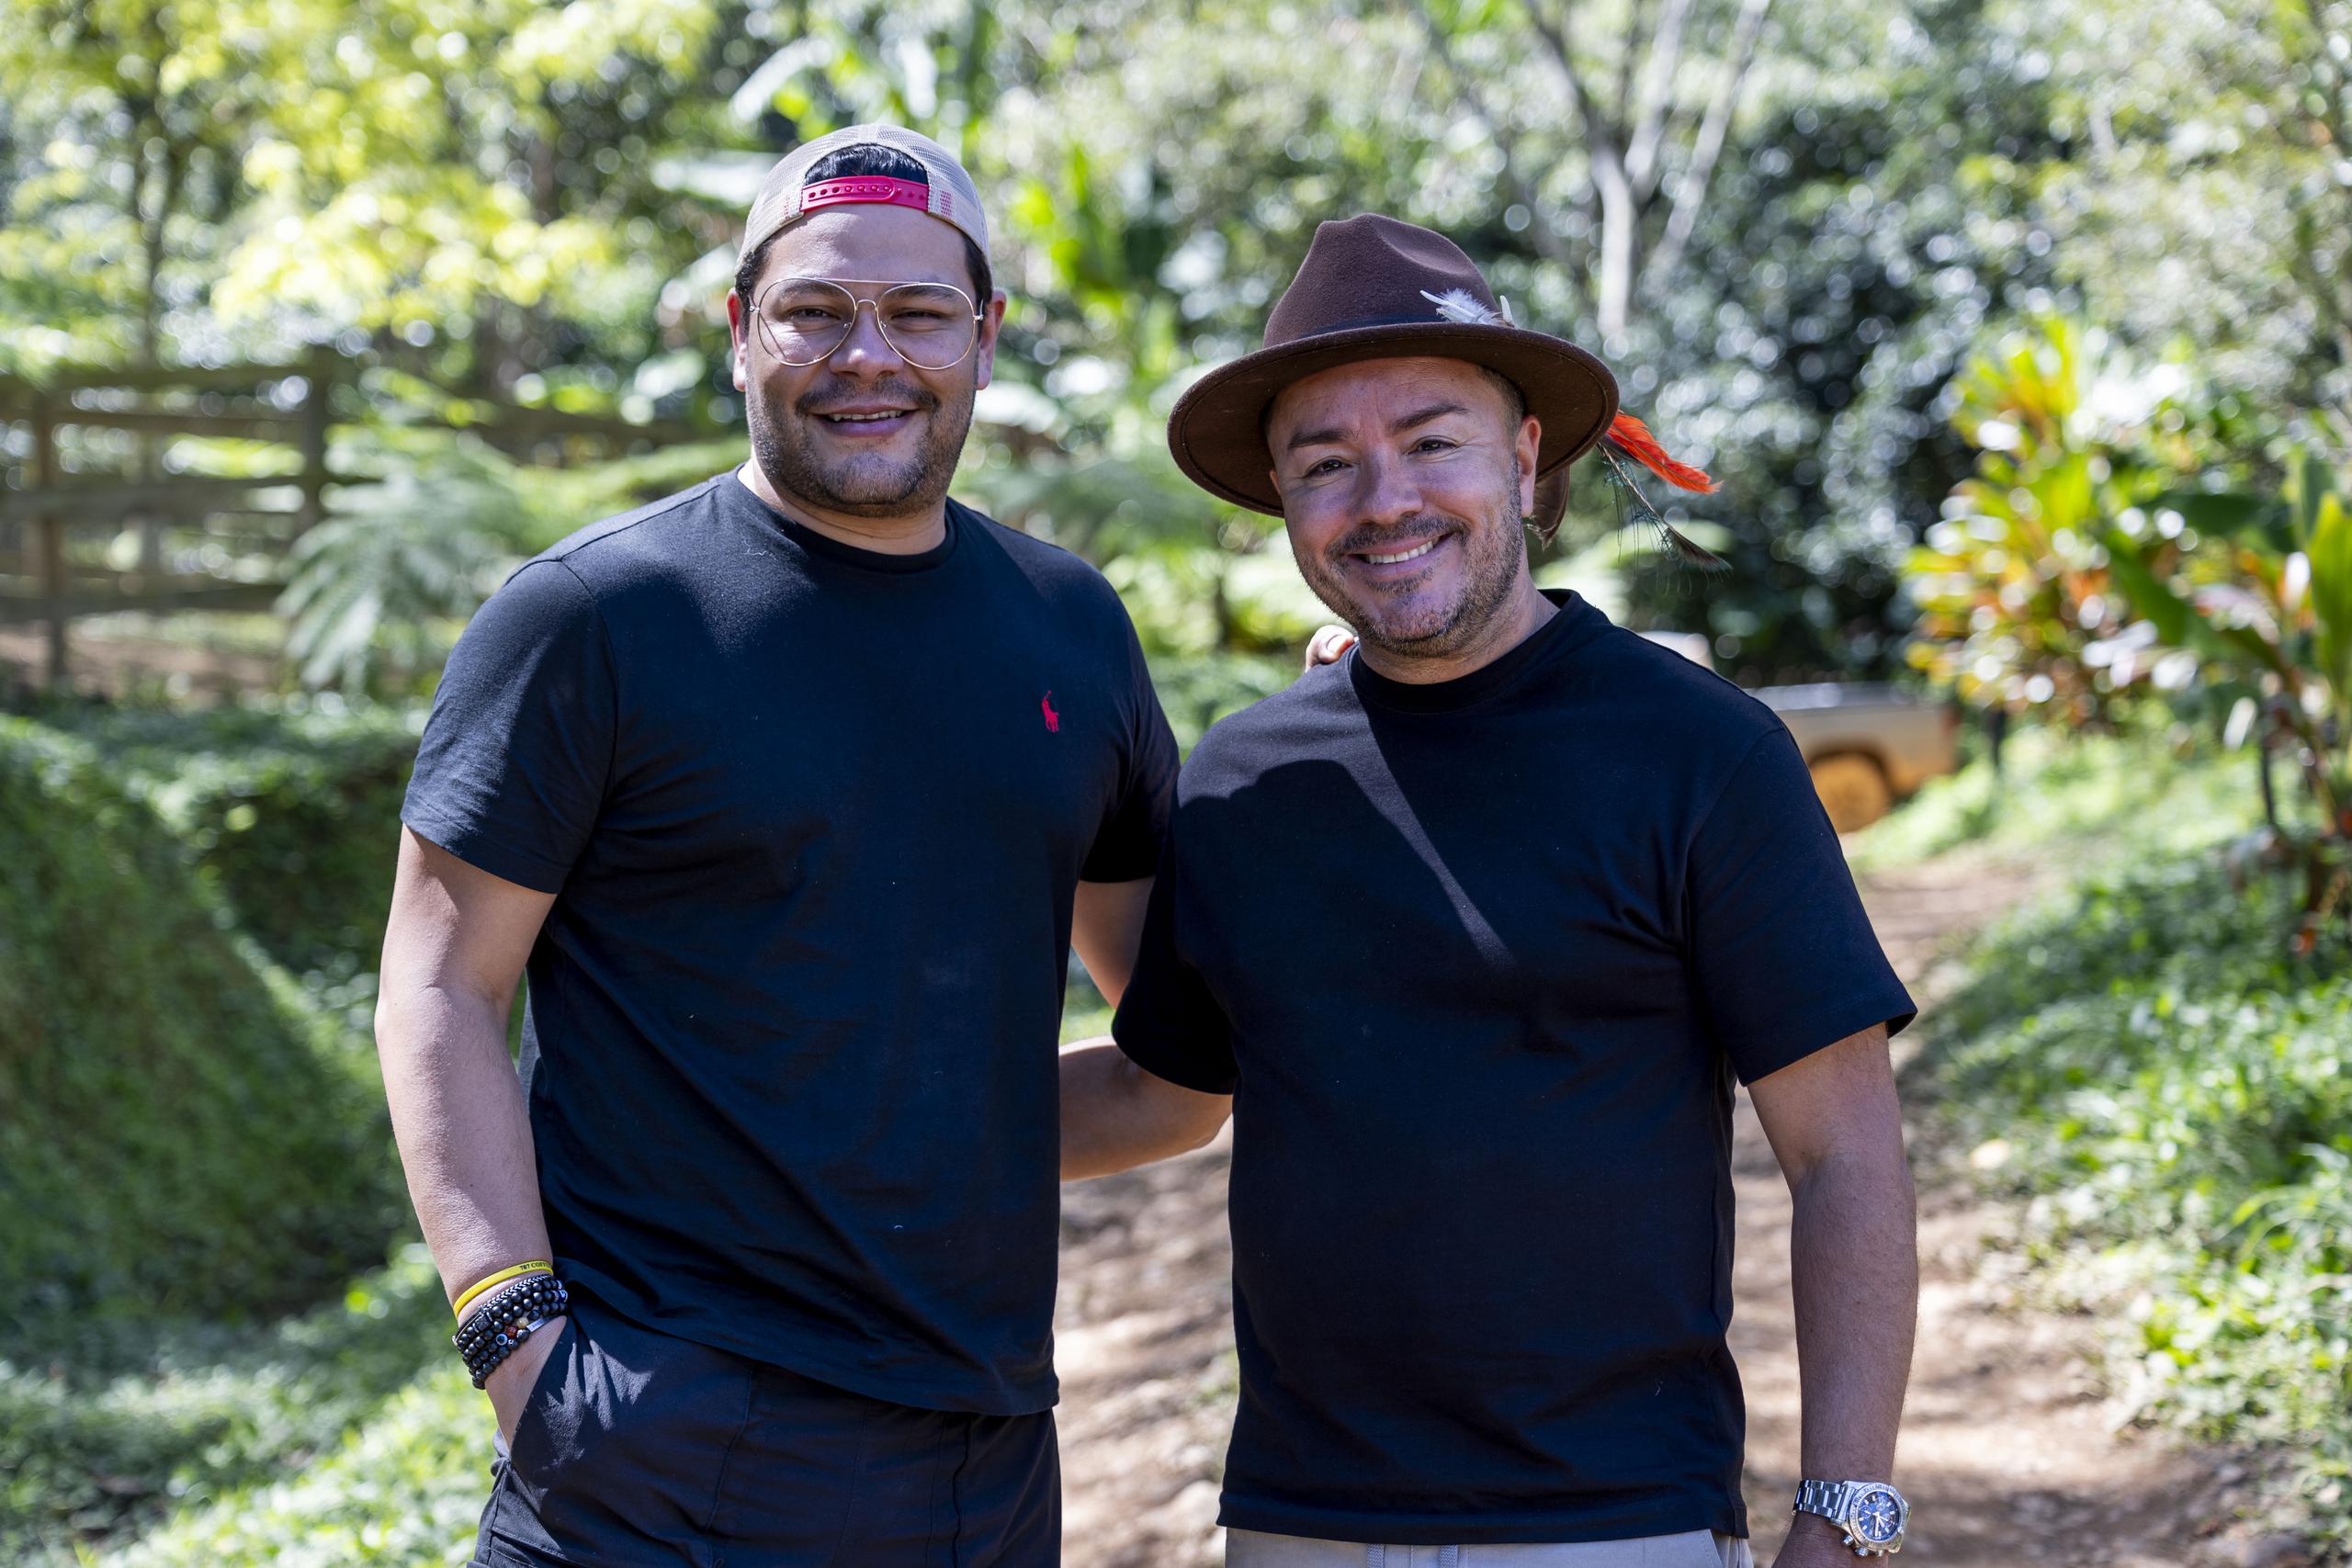 En las montañas de Indiera Baja, Brandon Iván Peña y Sam Sepúlveda fundaron esta empresa que produce y vende su café (787 Coffee) en su propia red de "coffee shops" distribuidos en Estados Unidos y Puerto Rico.